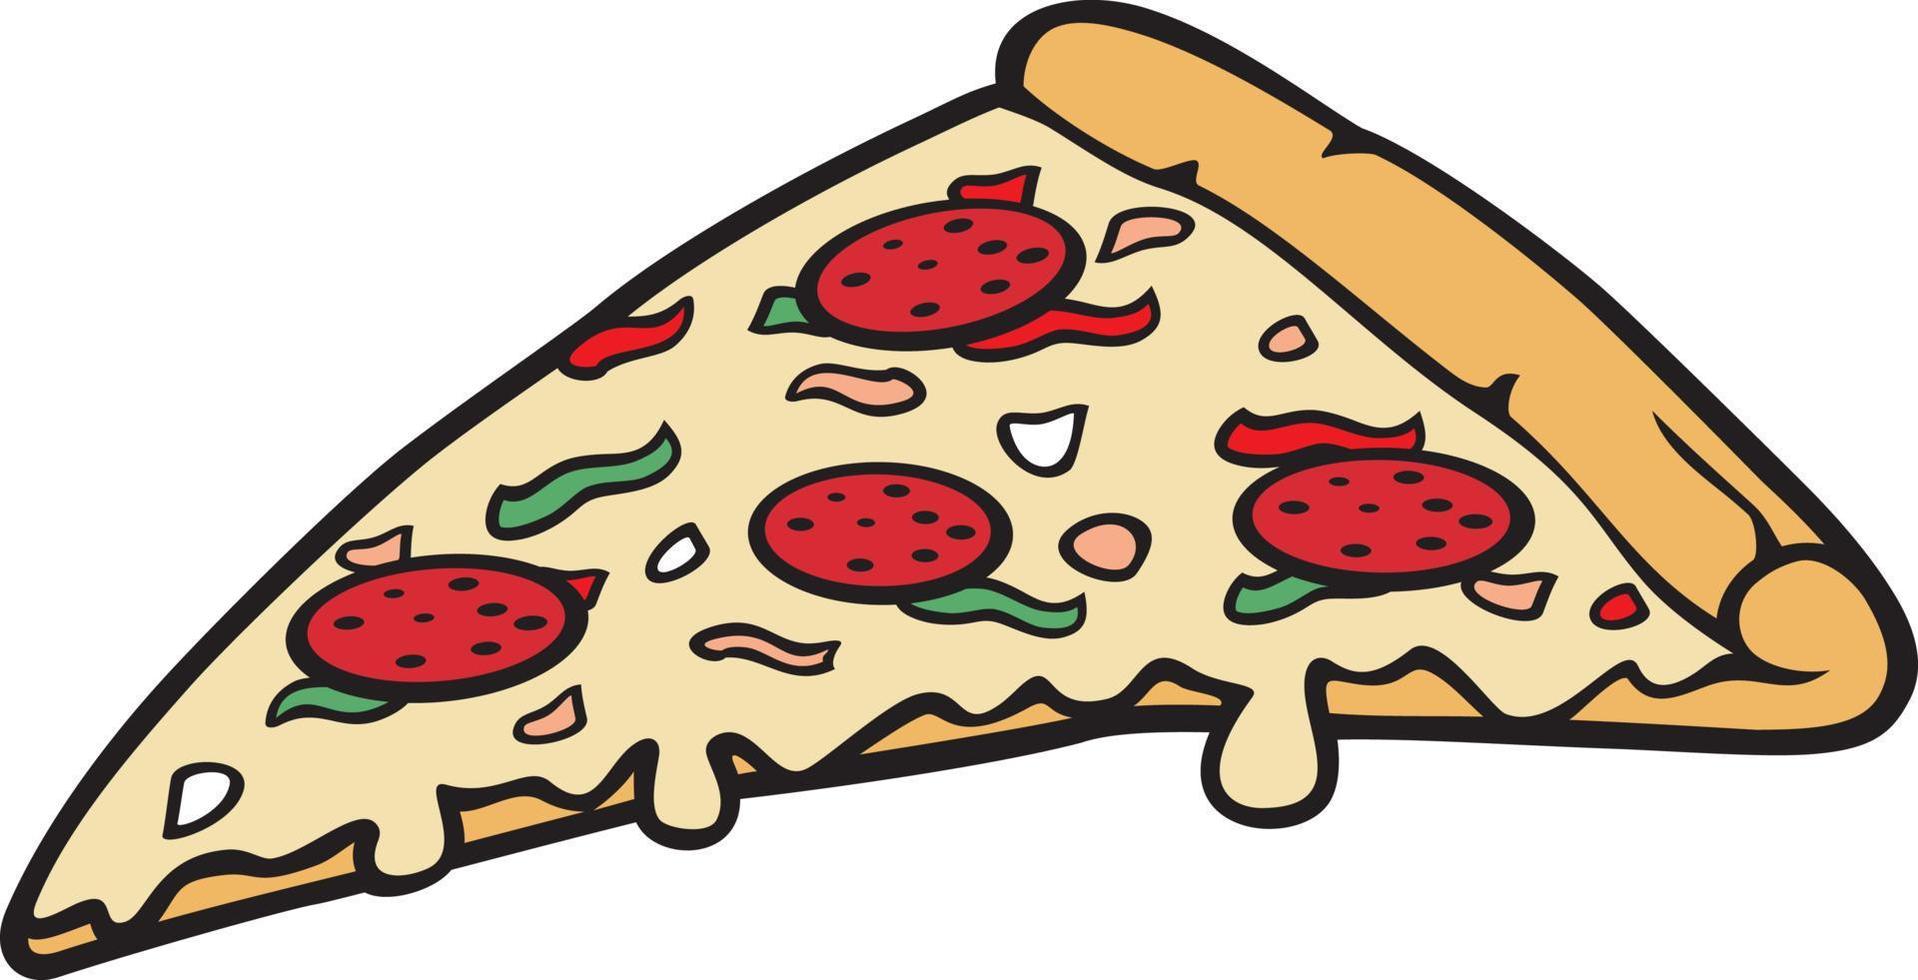 couleur de tranche de pizza. illustration vectorielle. vecteur